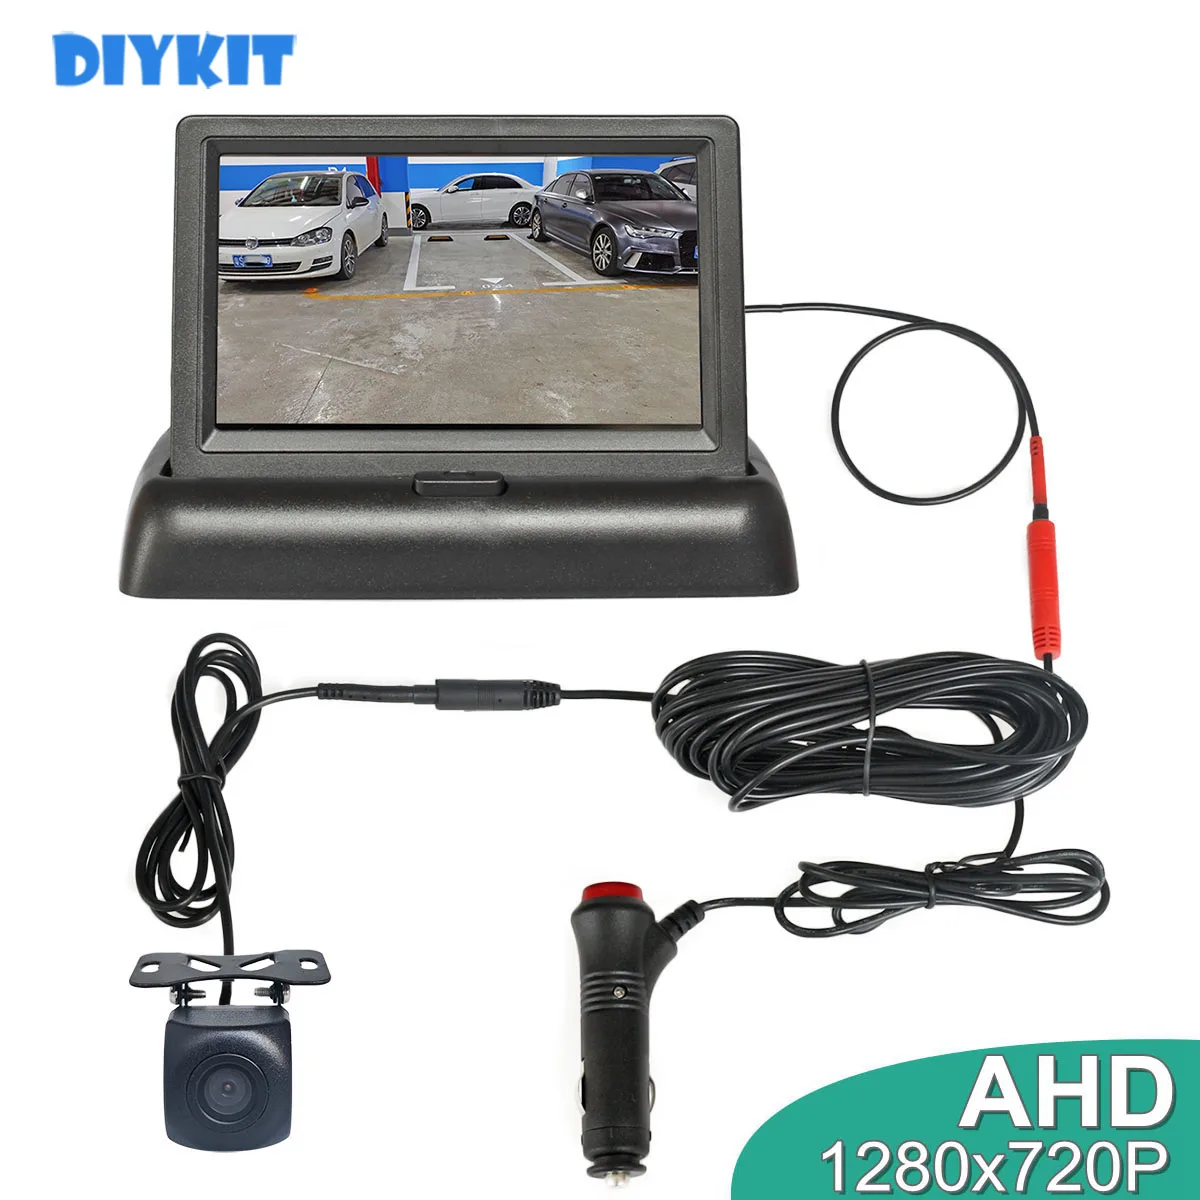 DIYKIT 4.3" AHD 800x480 Foldabel Car Monitor 1280*720 HD Starlight Night Vision Backup Car Camera Vehicle Reverse Car Charger